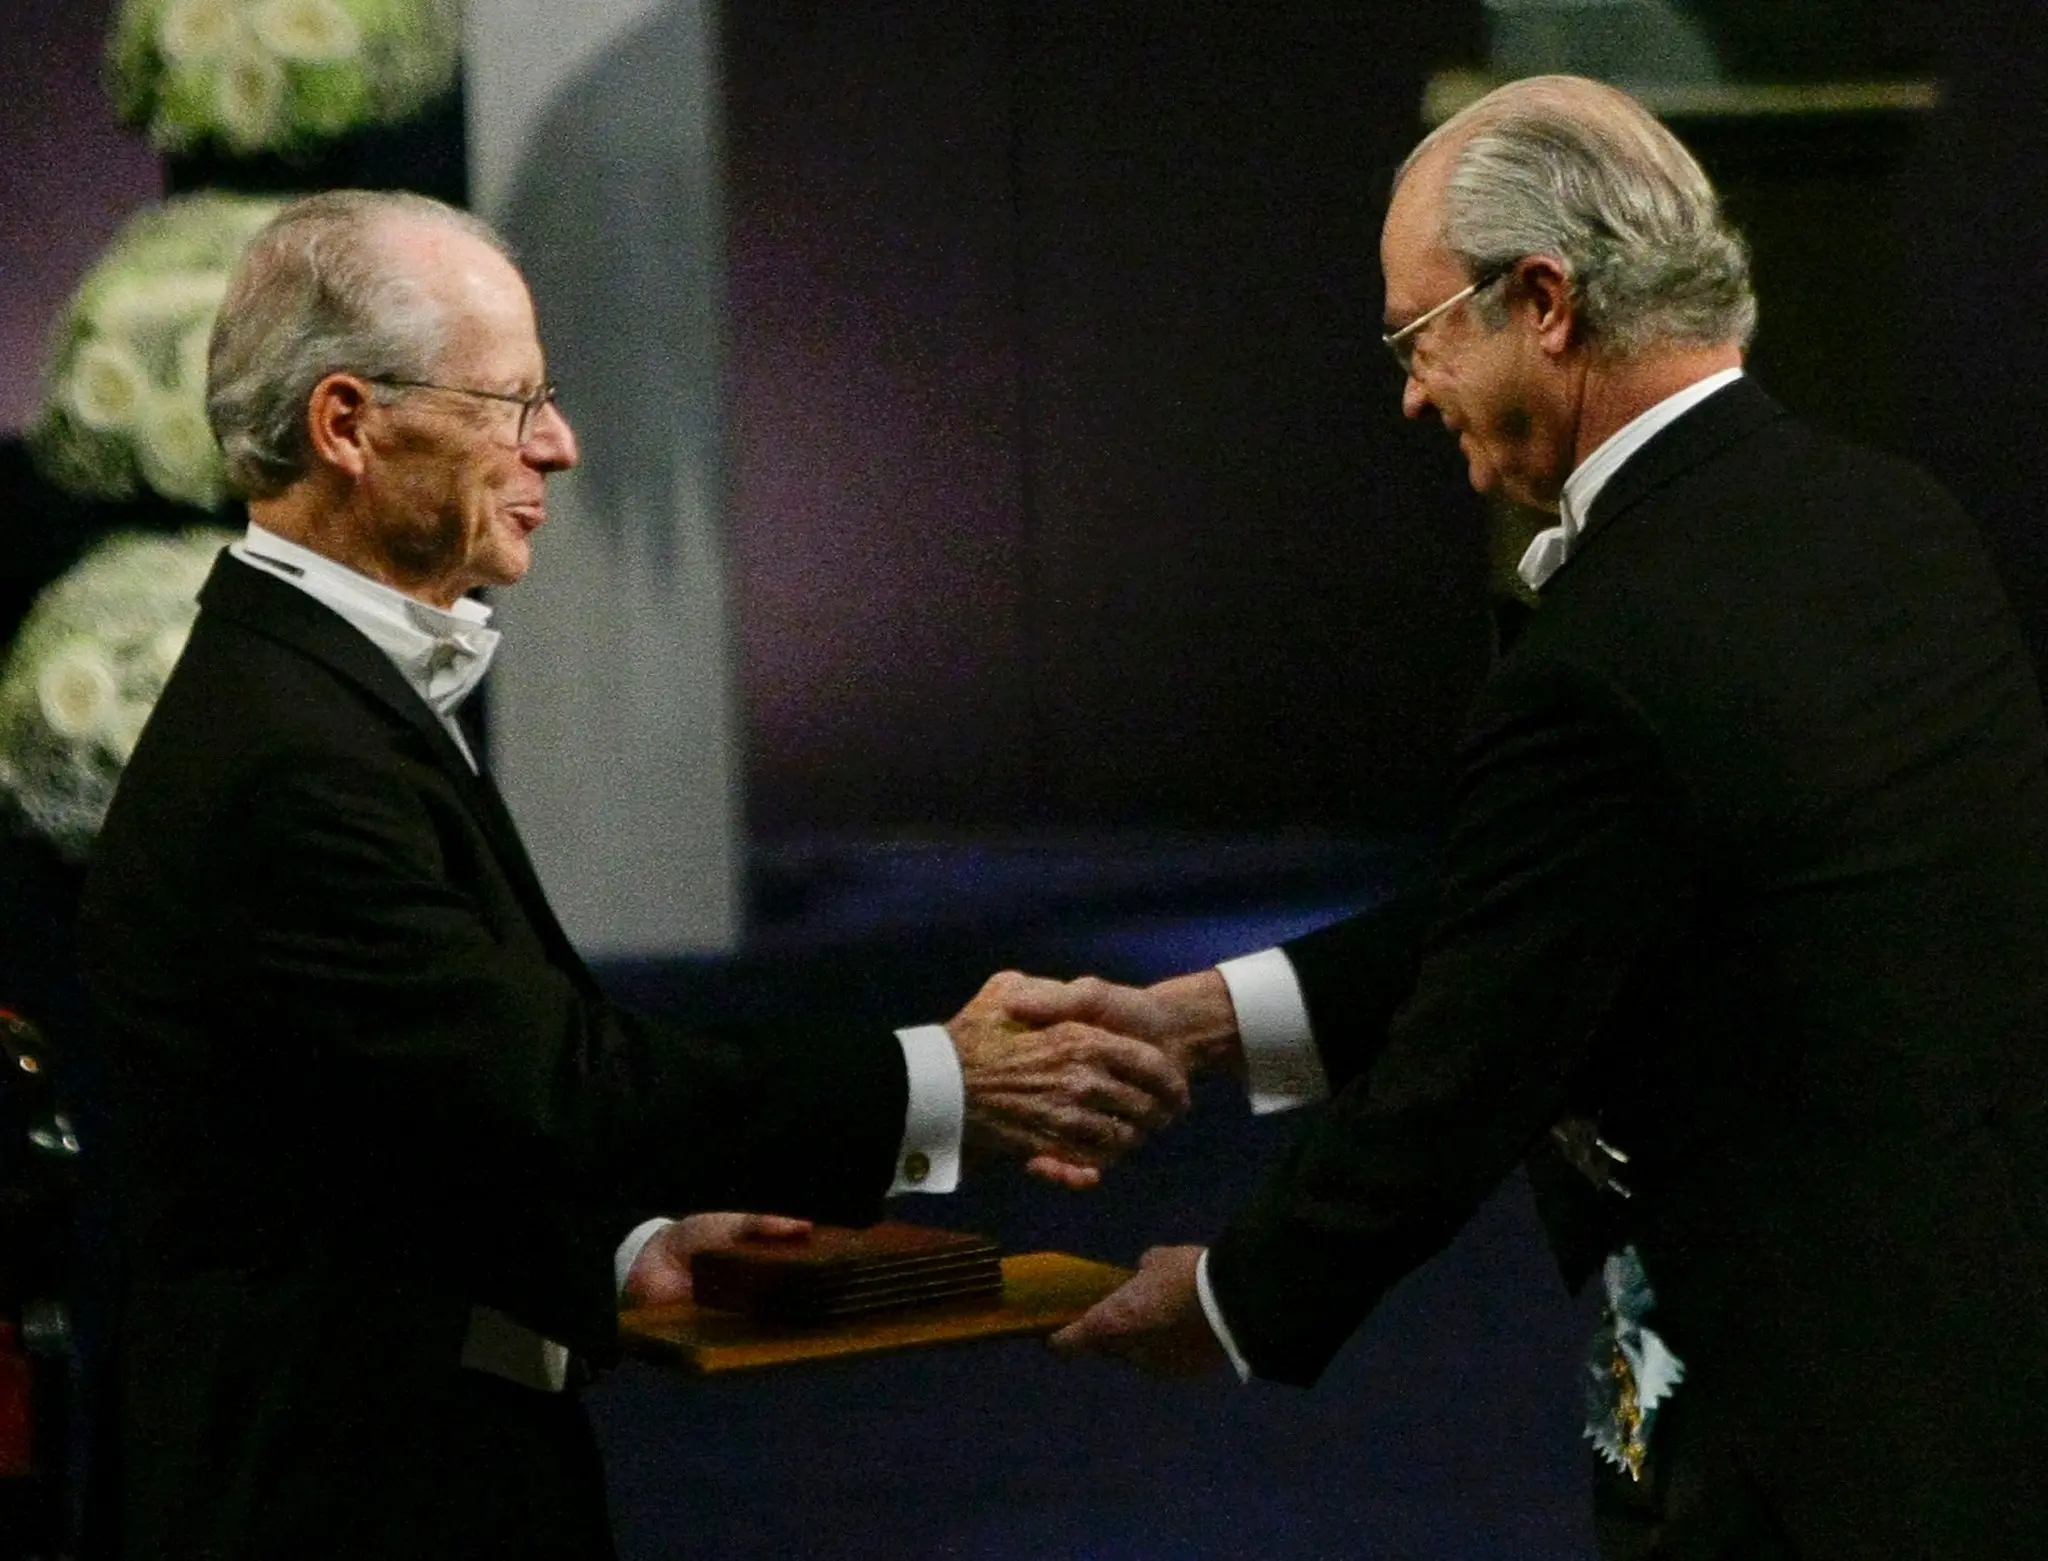 O Professor Williamson, à esquerda, recebeu o seu Prémio Nobel pelo Rei Carl XVI Gustaf da Suécia em Dezembro de 2009, em Estocolmo. (Crédito da fotografia: Peter Andrews/Reuters)